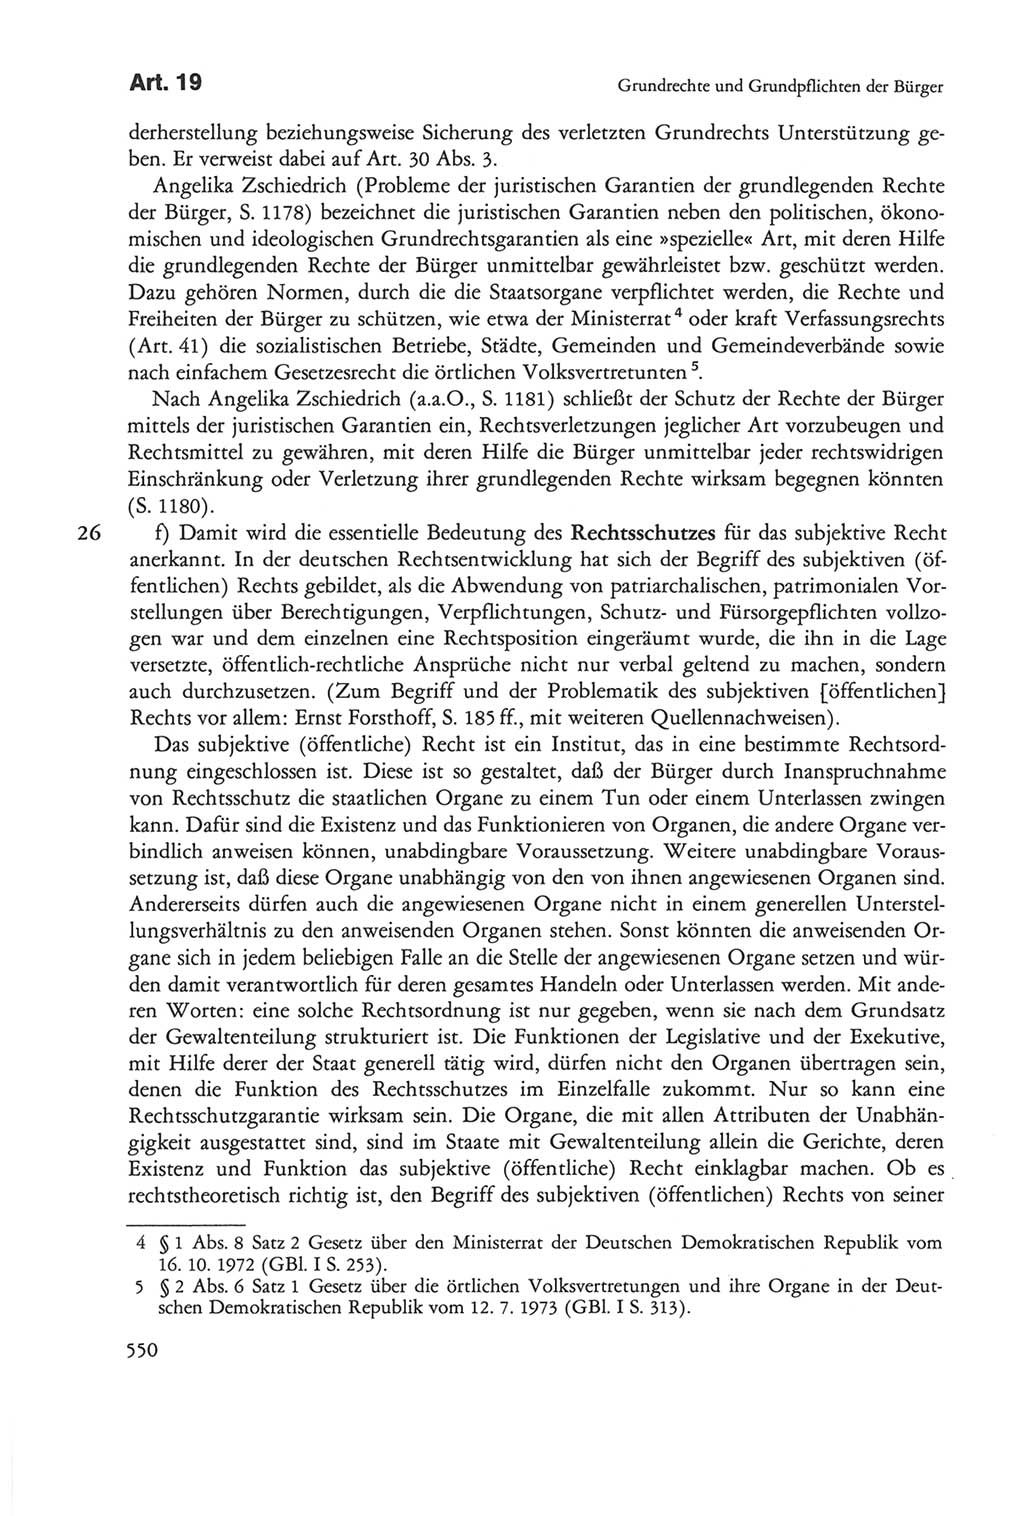 Die sozialistische Verfassung der Deutschen Demokratischen Republik (DDR), Kommentar 1982, Seite 550 (Soz. Verf. DDR Komm. 1982, S. 550)